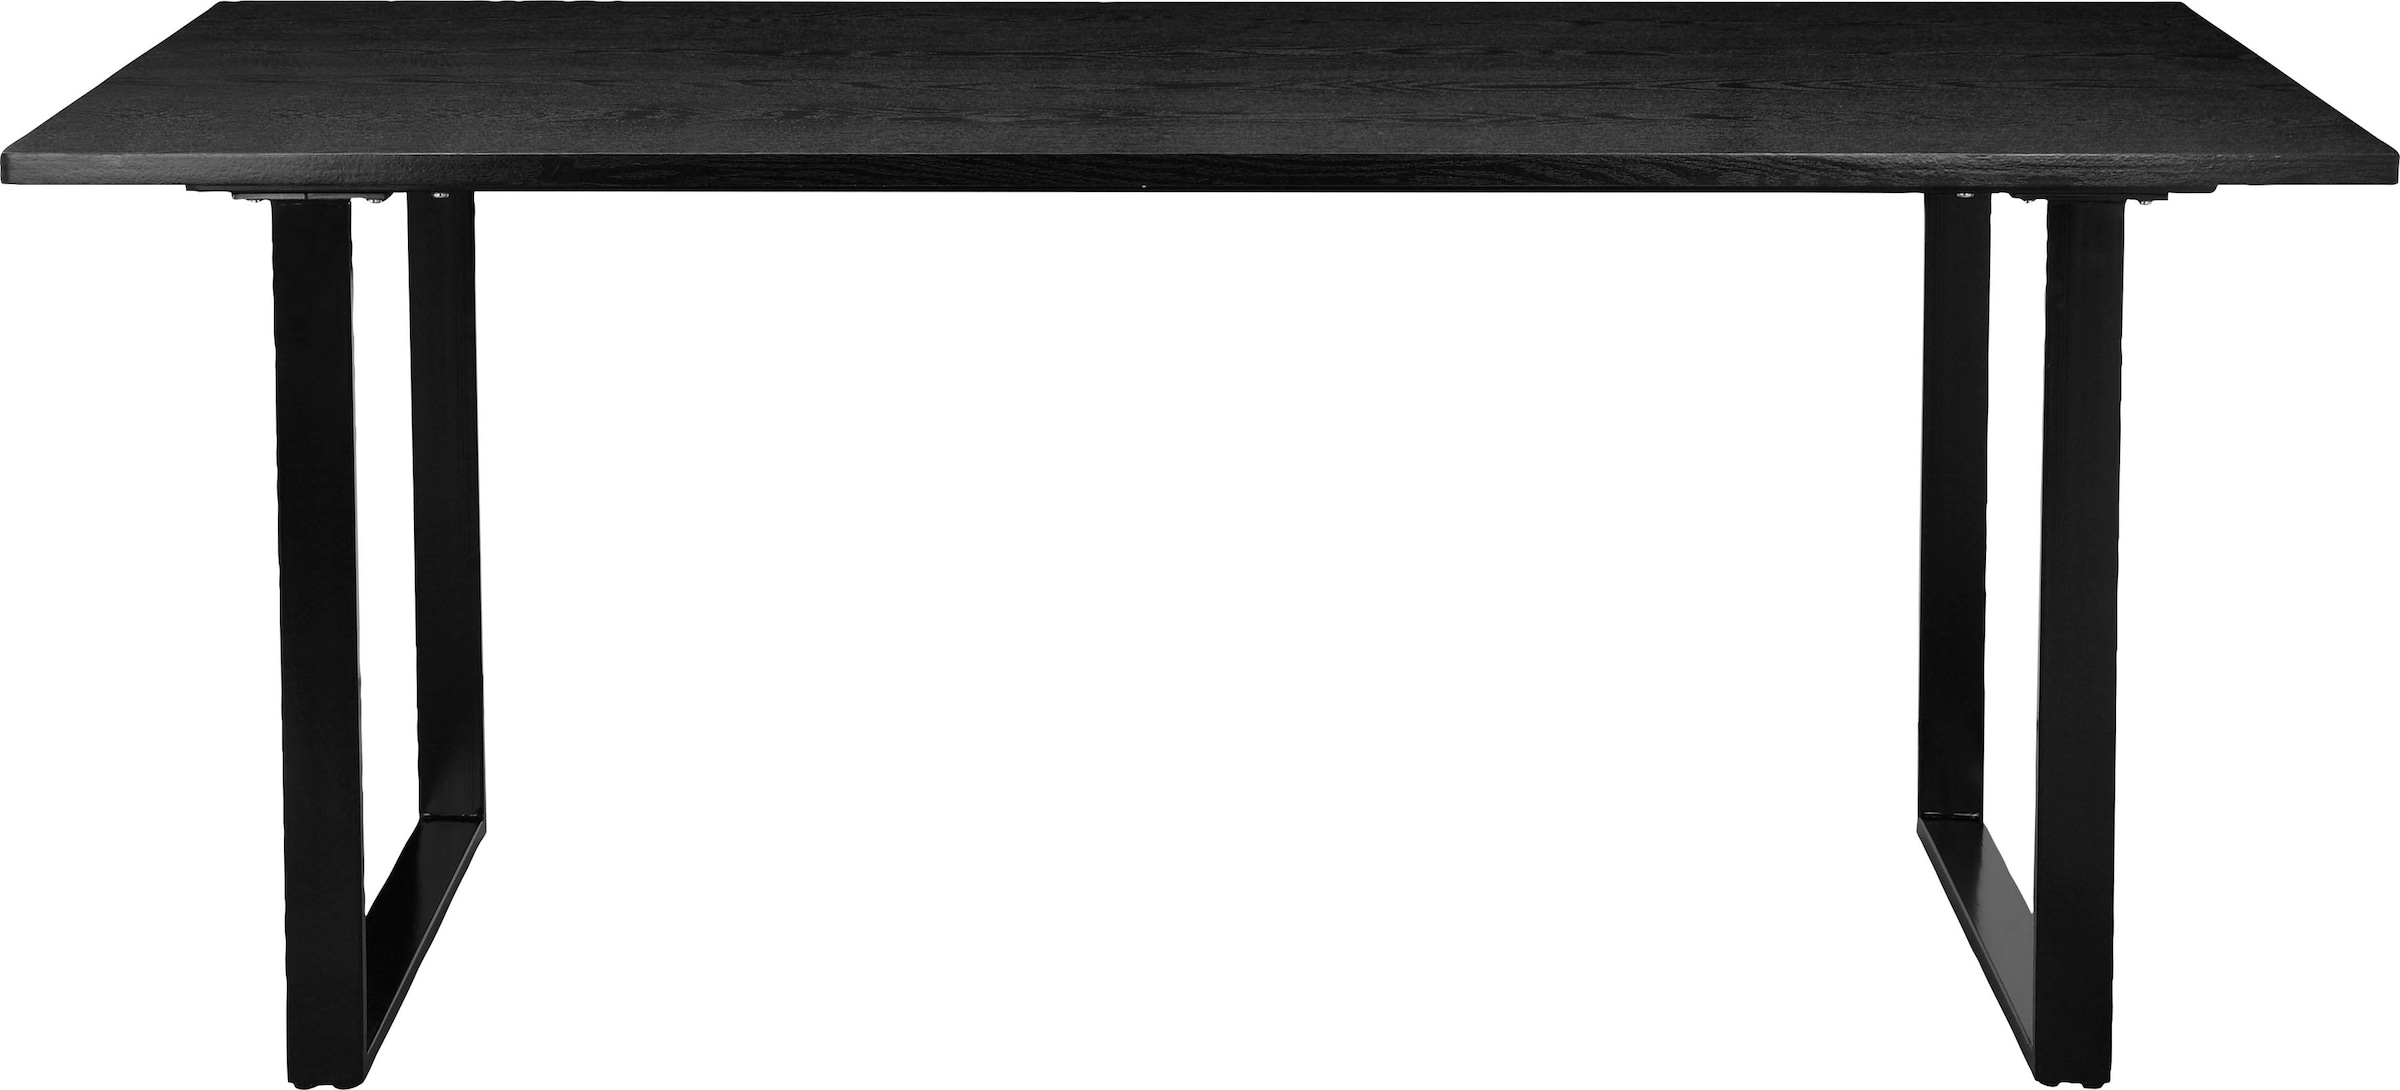 Home affaire Esstisch »Lannion«, (1 St.), Gestell aus Metall schwarz,  Tischplatte mit Holzstruktur, Höhe 76 cm kaufen bei OTTO